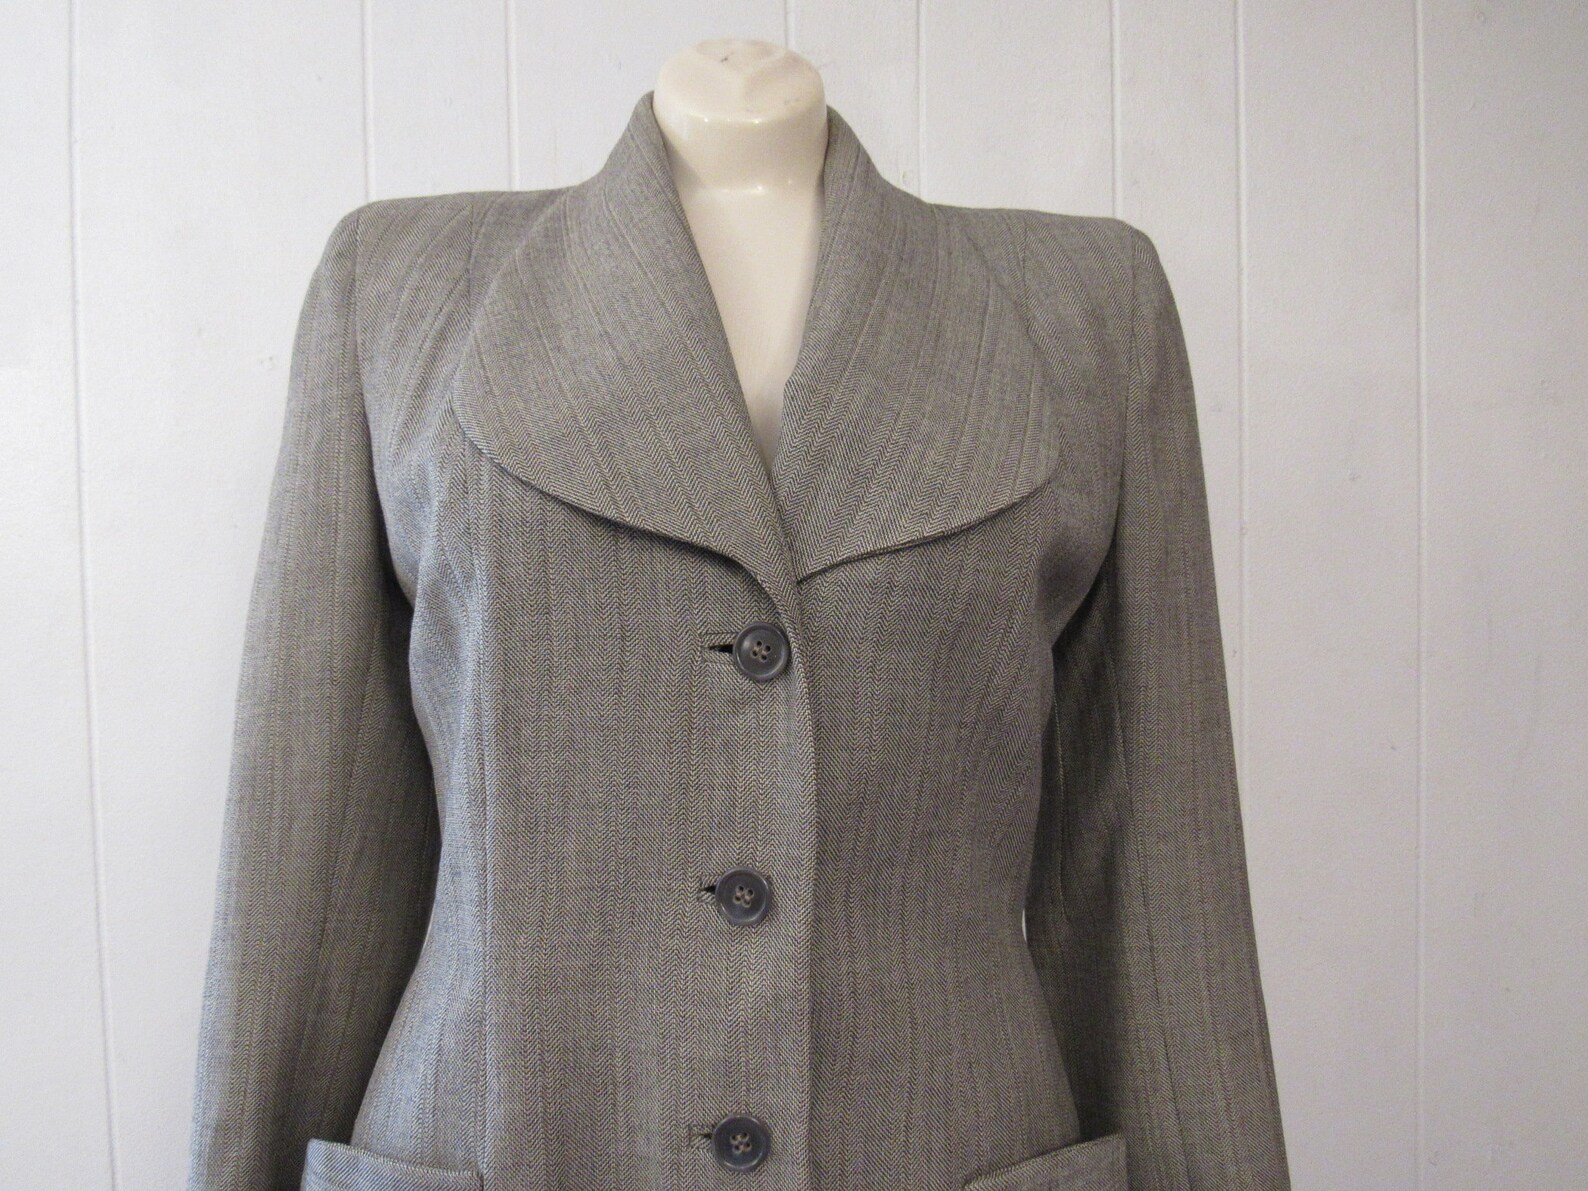 Vintage Suit 1940s Suit Women's Suit Jacket and Skirt | Etsy